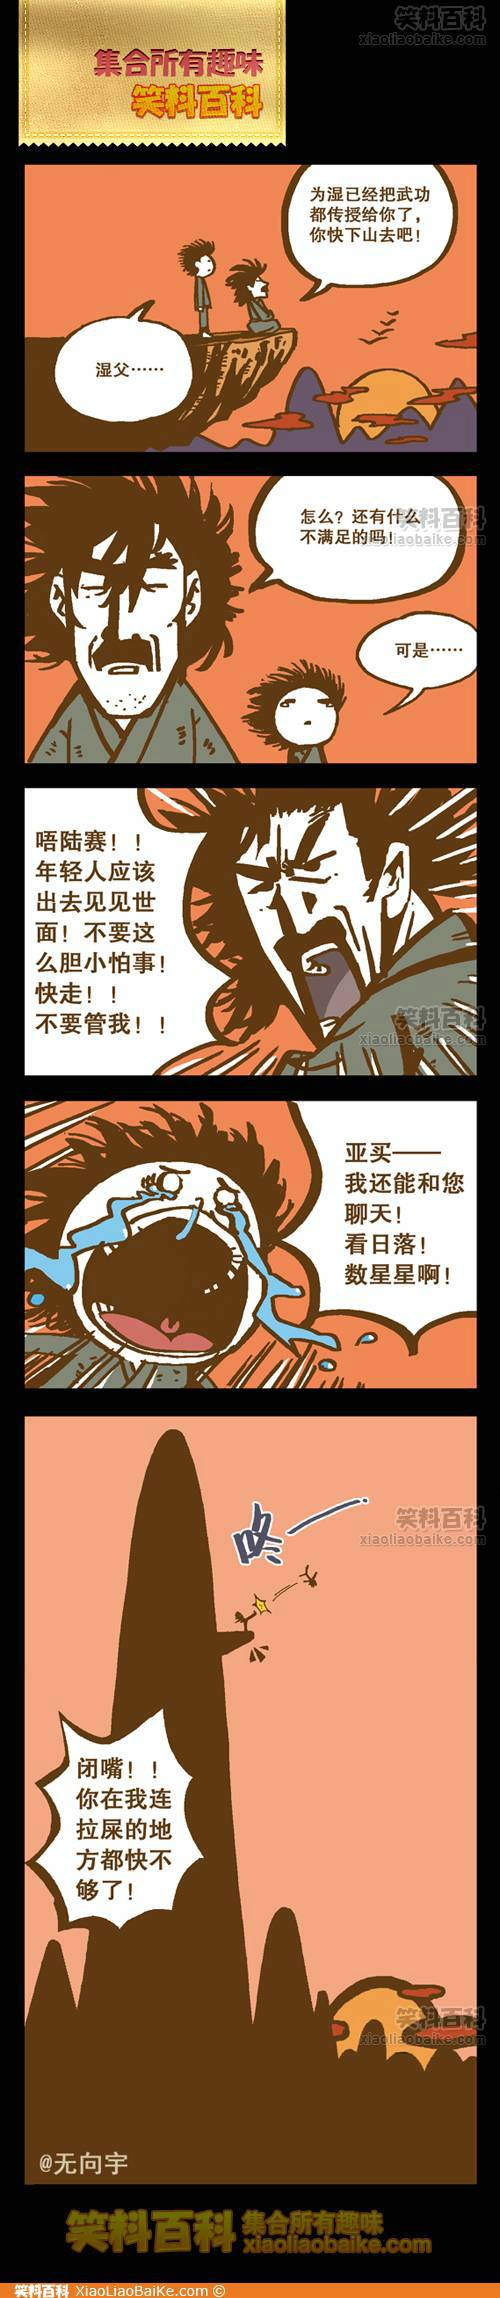 邪恶漫画爆笑囧图第235刊：给人带来幸福的排水口